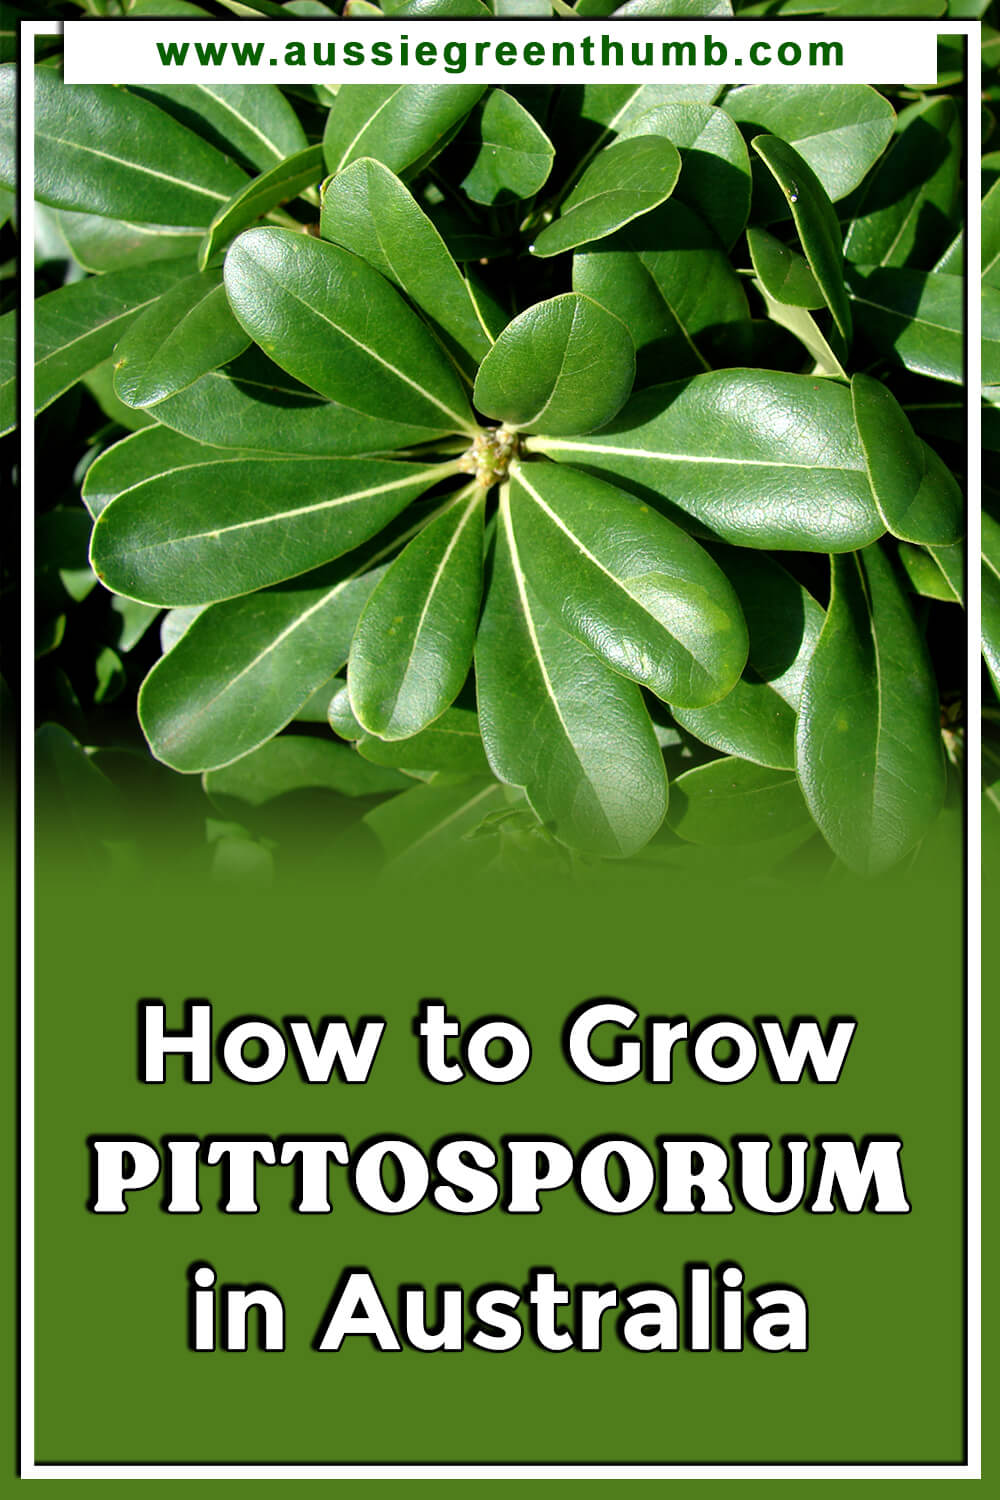 How to Grow Pittosporum in Australia